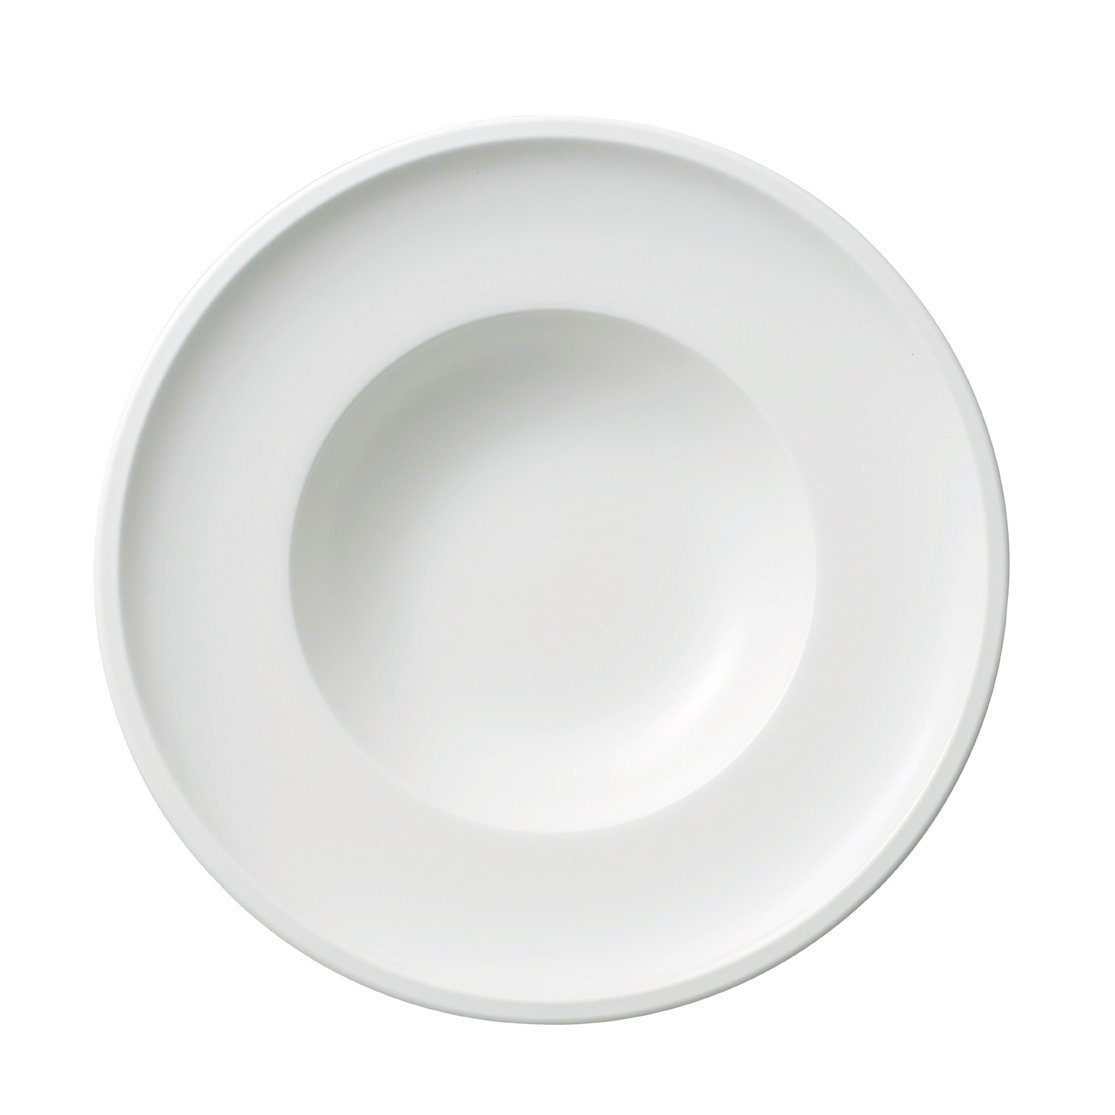 Plato llano blanco de cerámica 27 x 27 cm resistente y duradero vajilla de cocina apto para microondas y lavavajillas hogar 